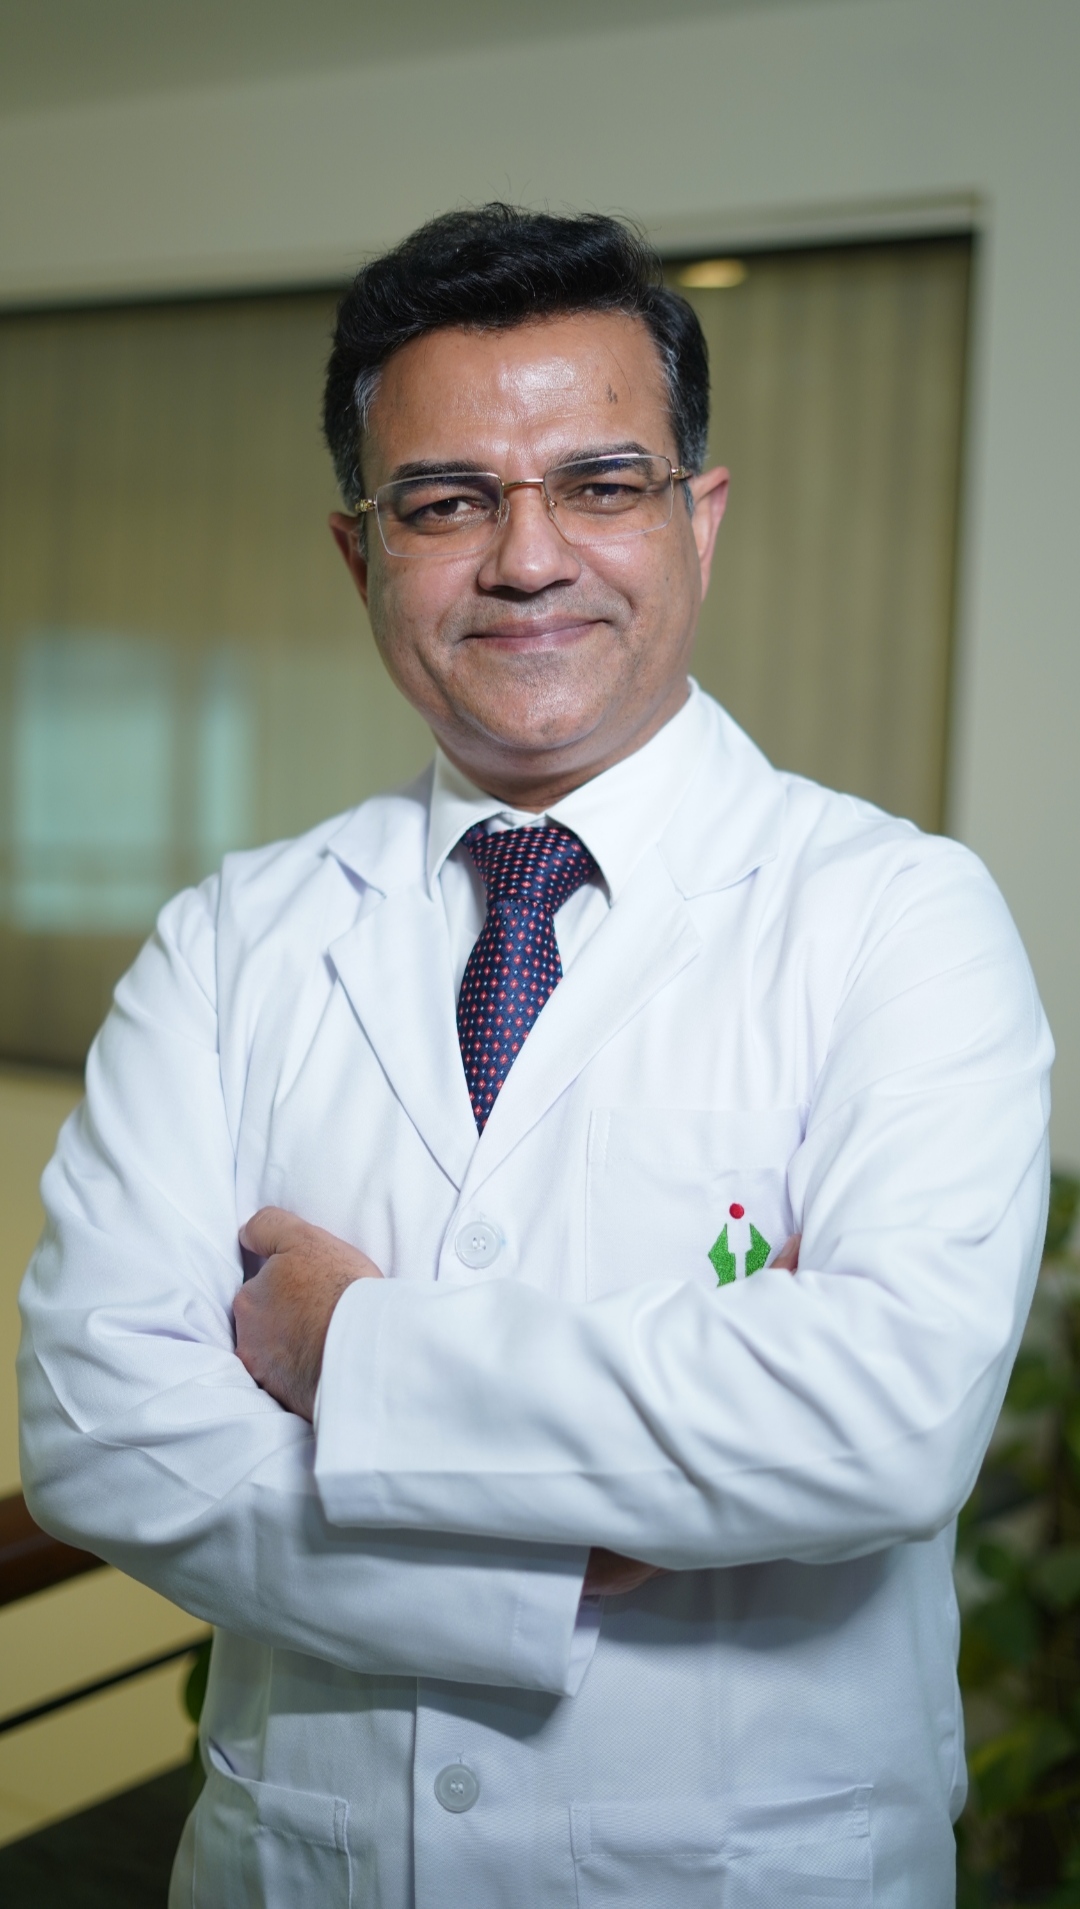 Dr. Manish Nanda